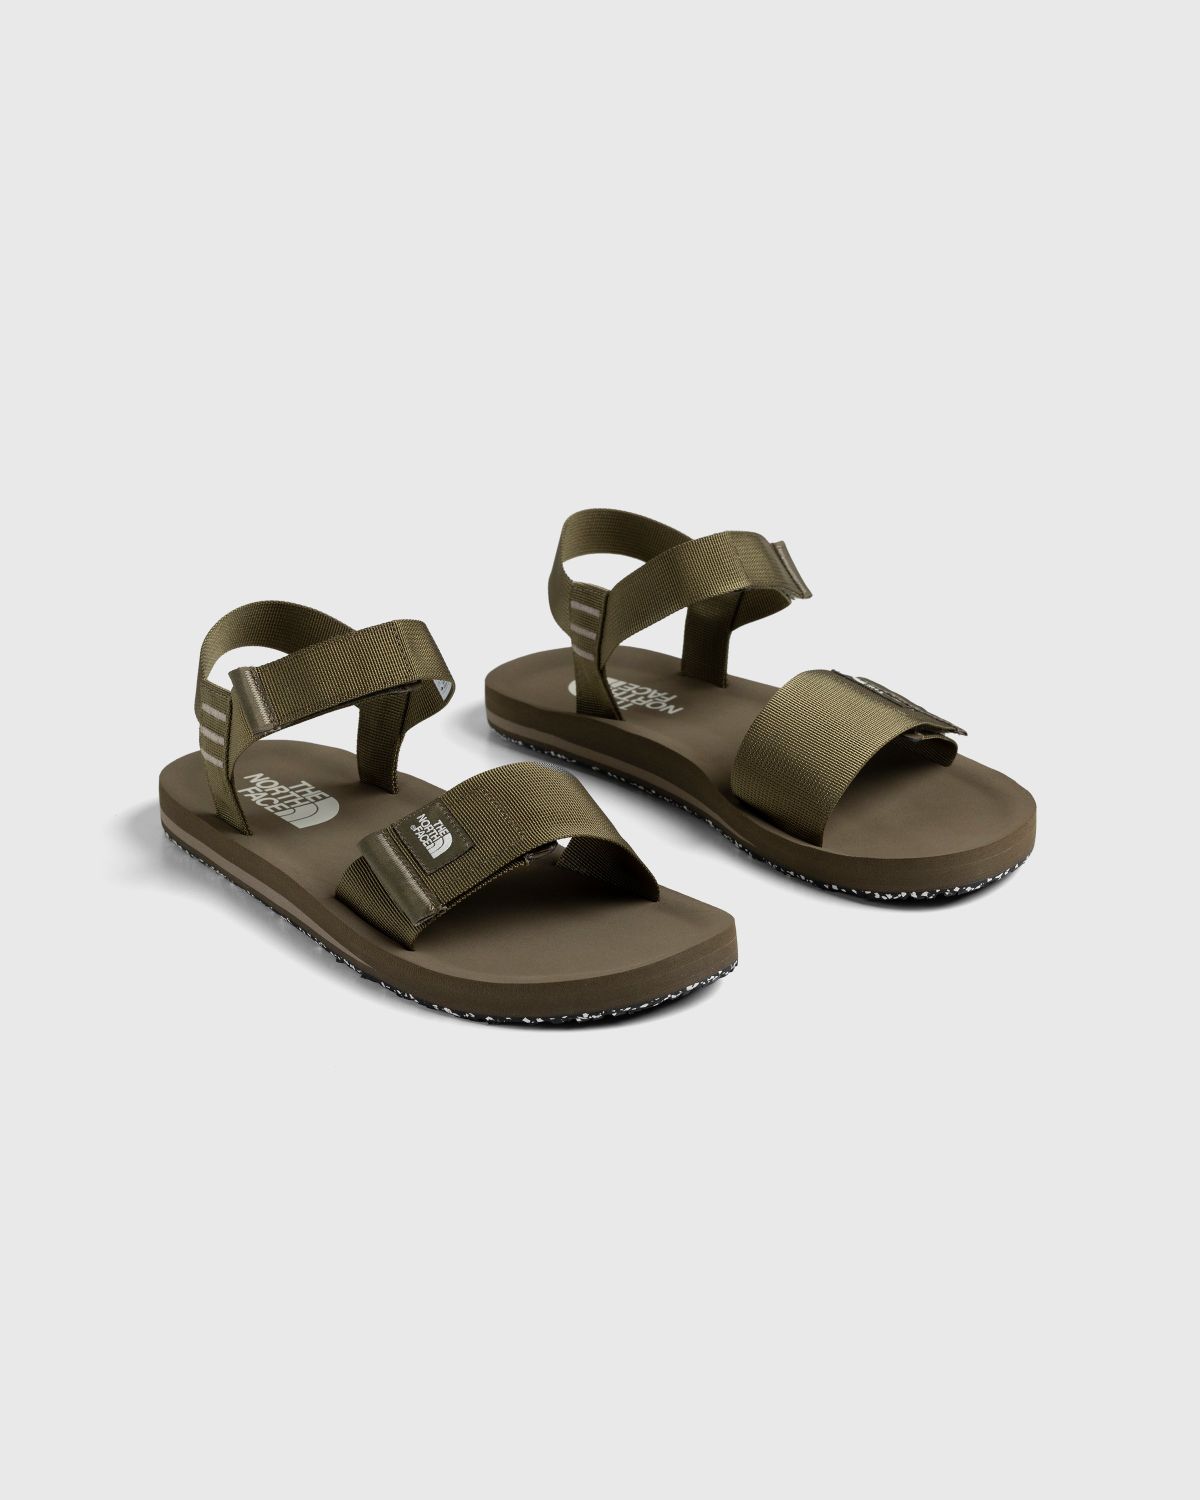 The North Face – Skeena Sport Sandal Militaryolive/Mineralgrey - Sandals & Slides - Green - Image 3